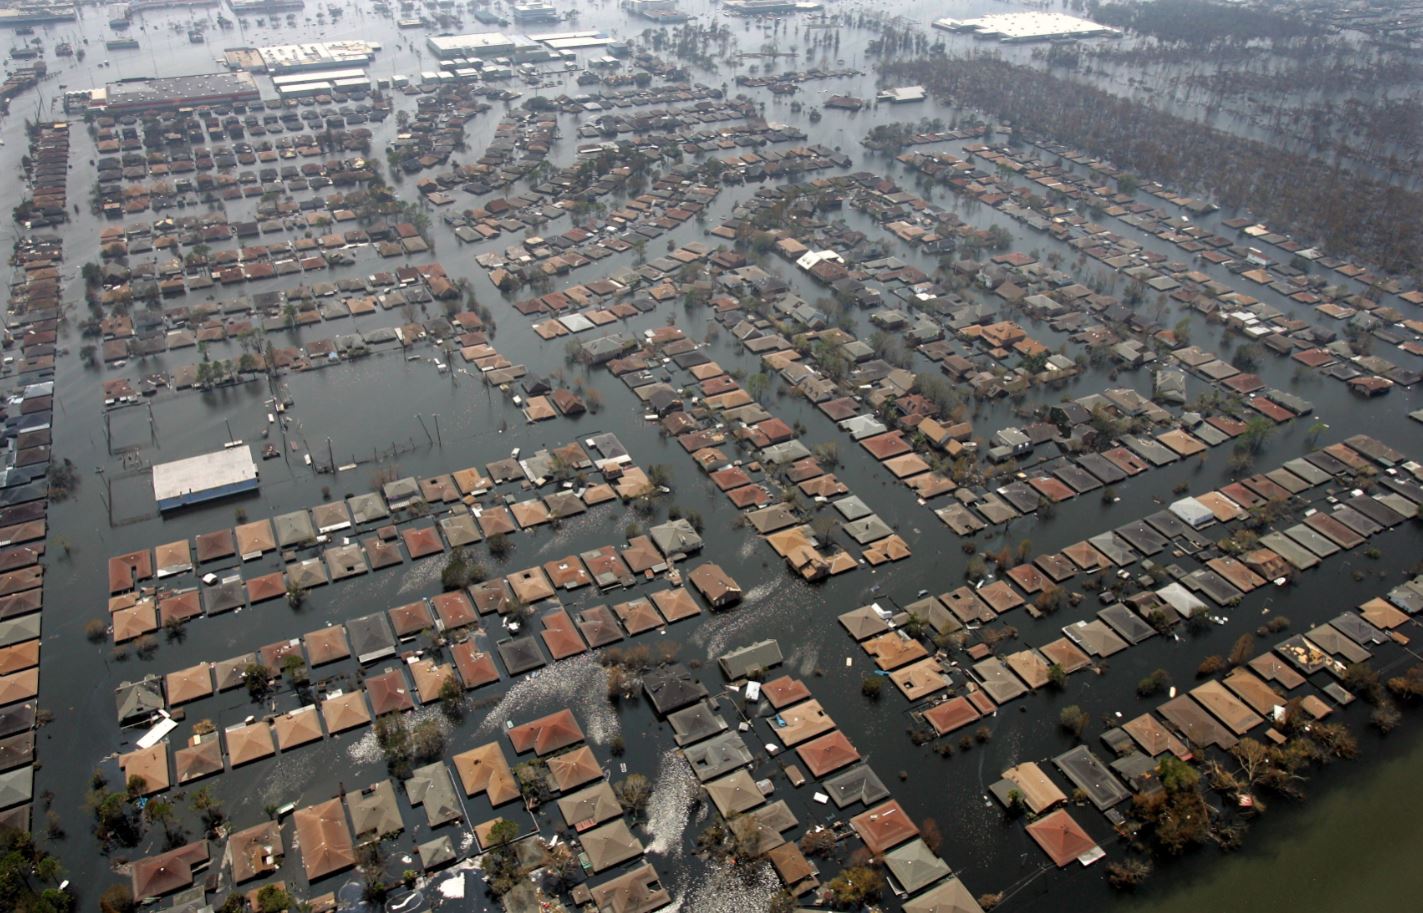 Aumentan pérdidas económicas por desastres naturales: ONU